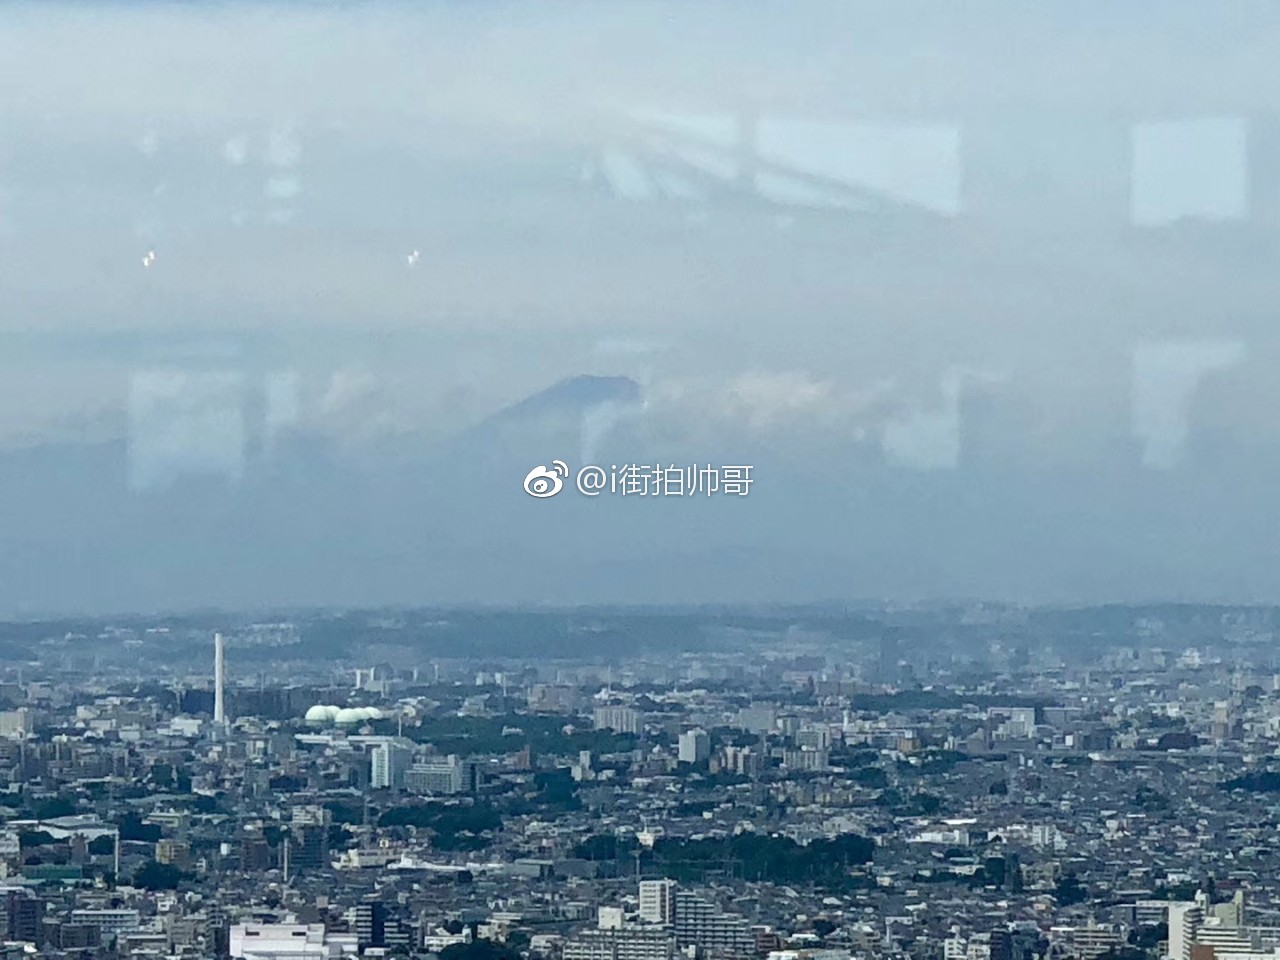 在东京都厅展望台看到富士山了!